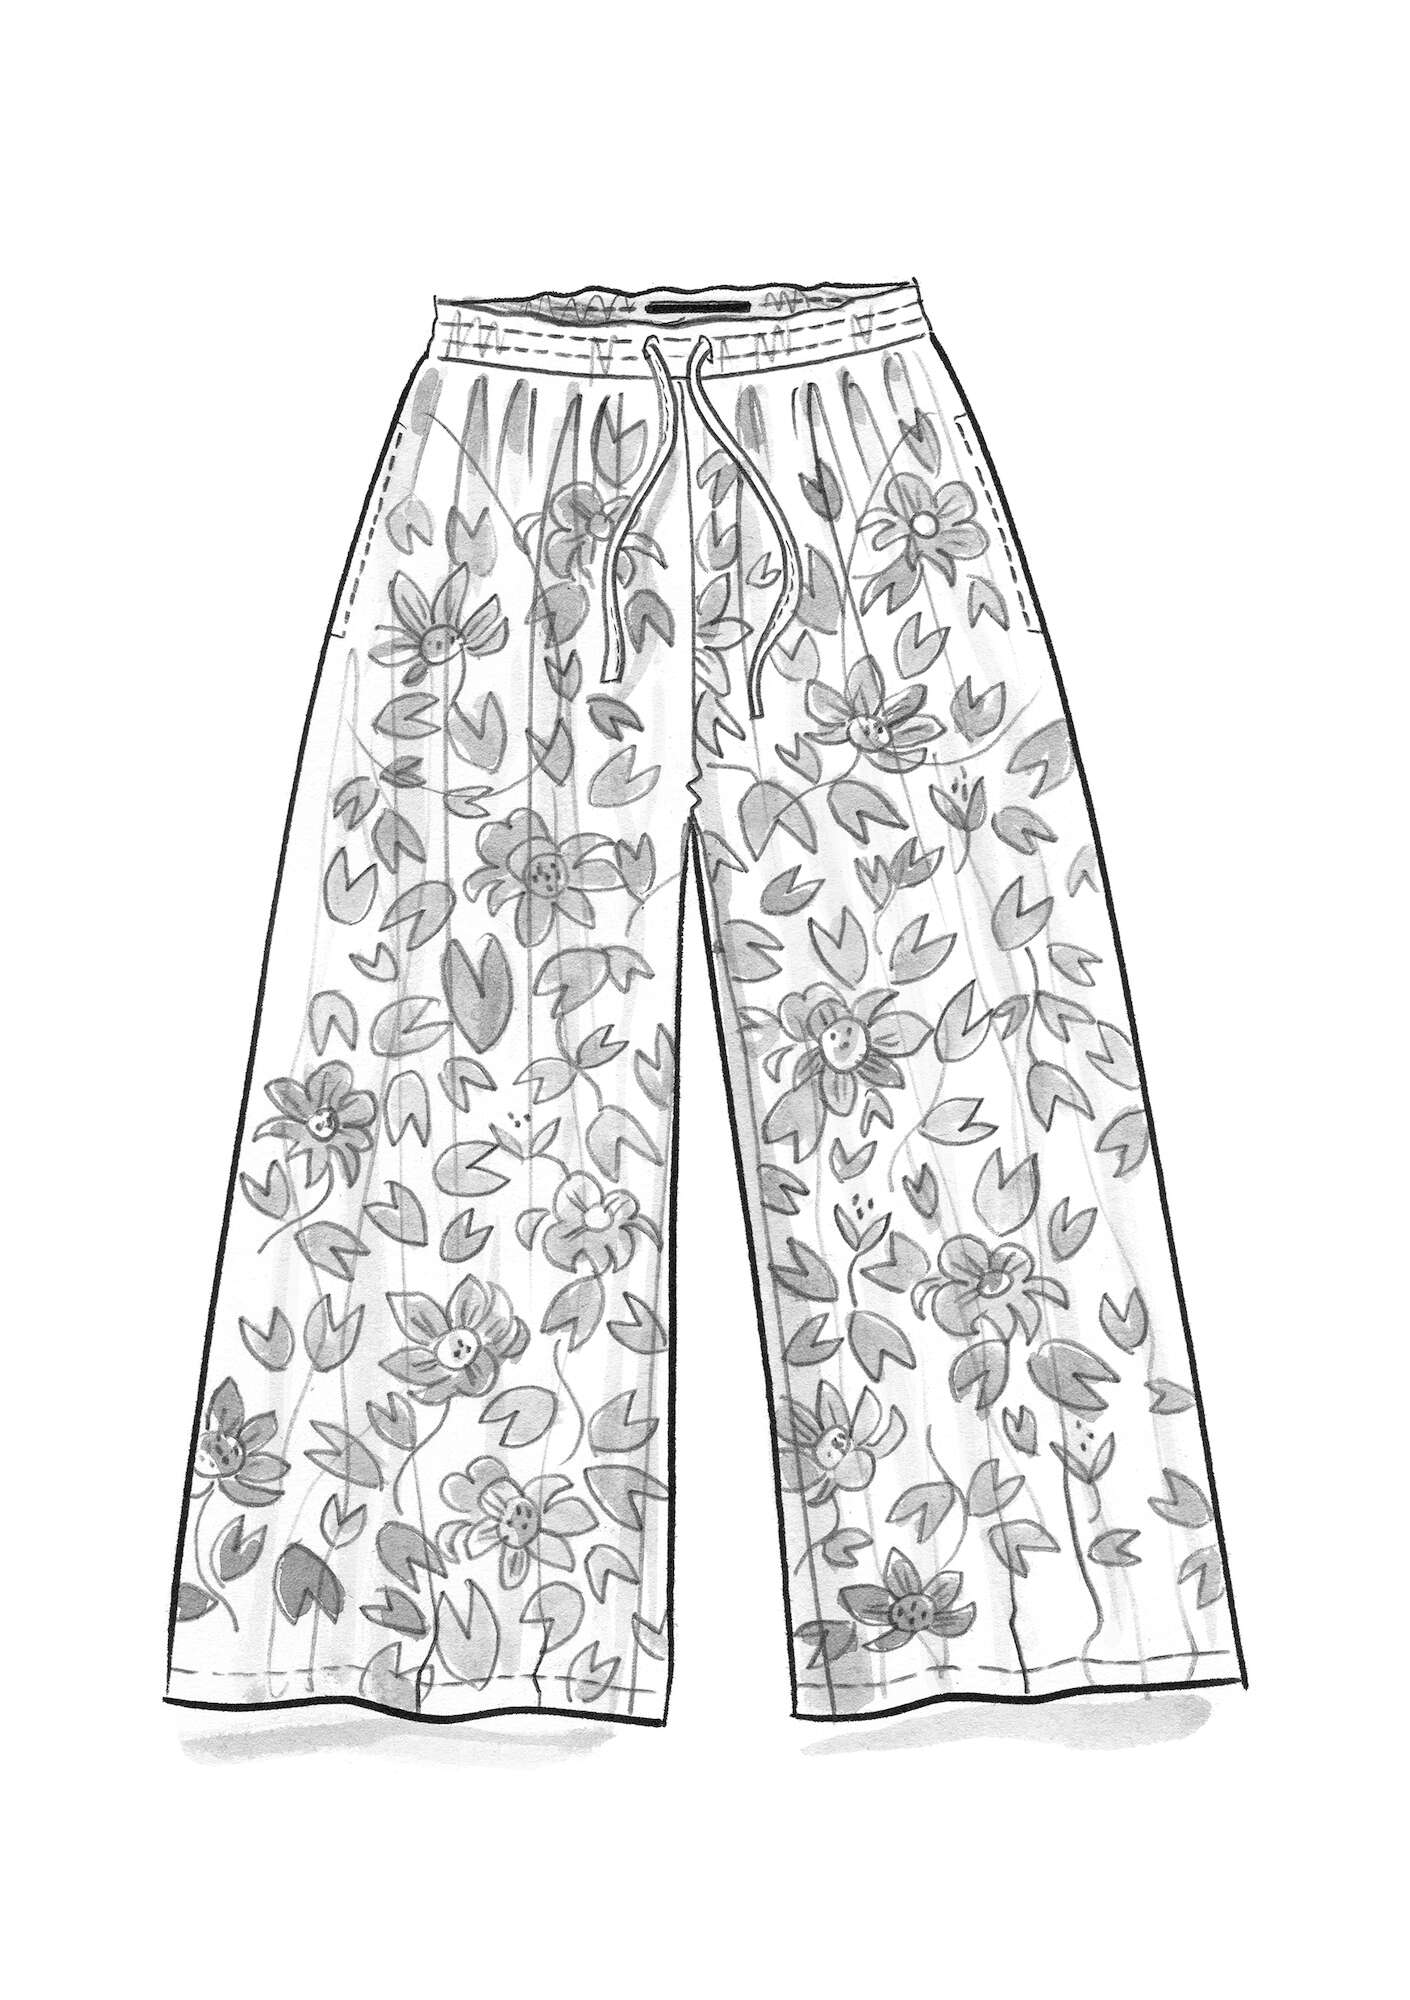 Vevd bukse «Lotus» i økologisk bomull svart/mønstret